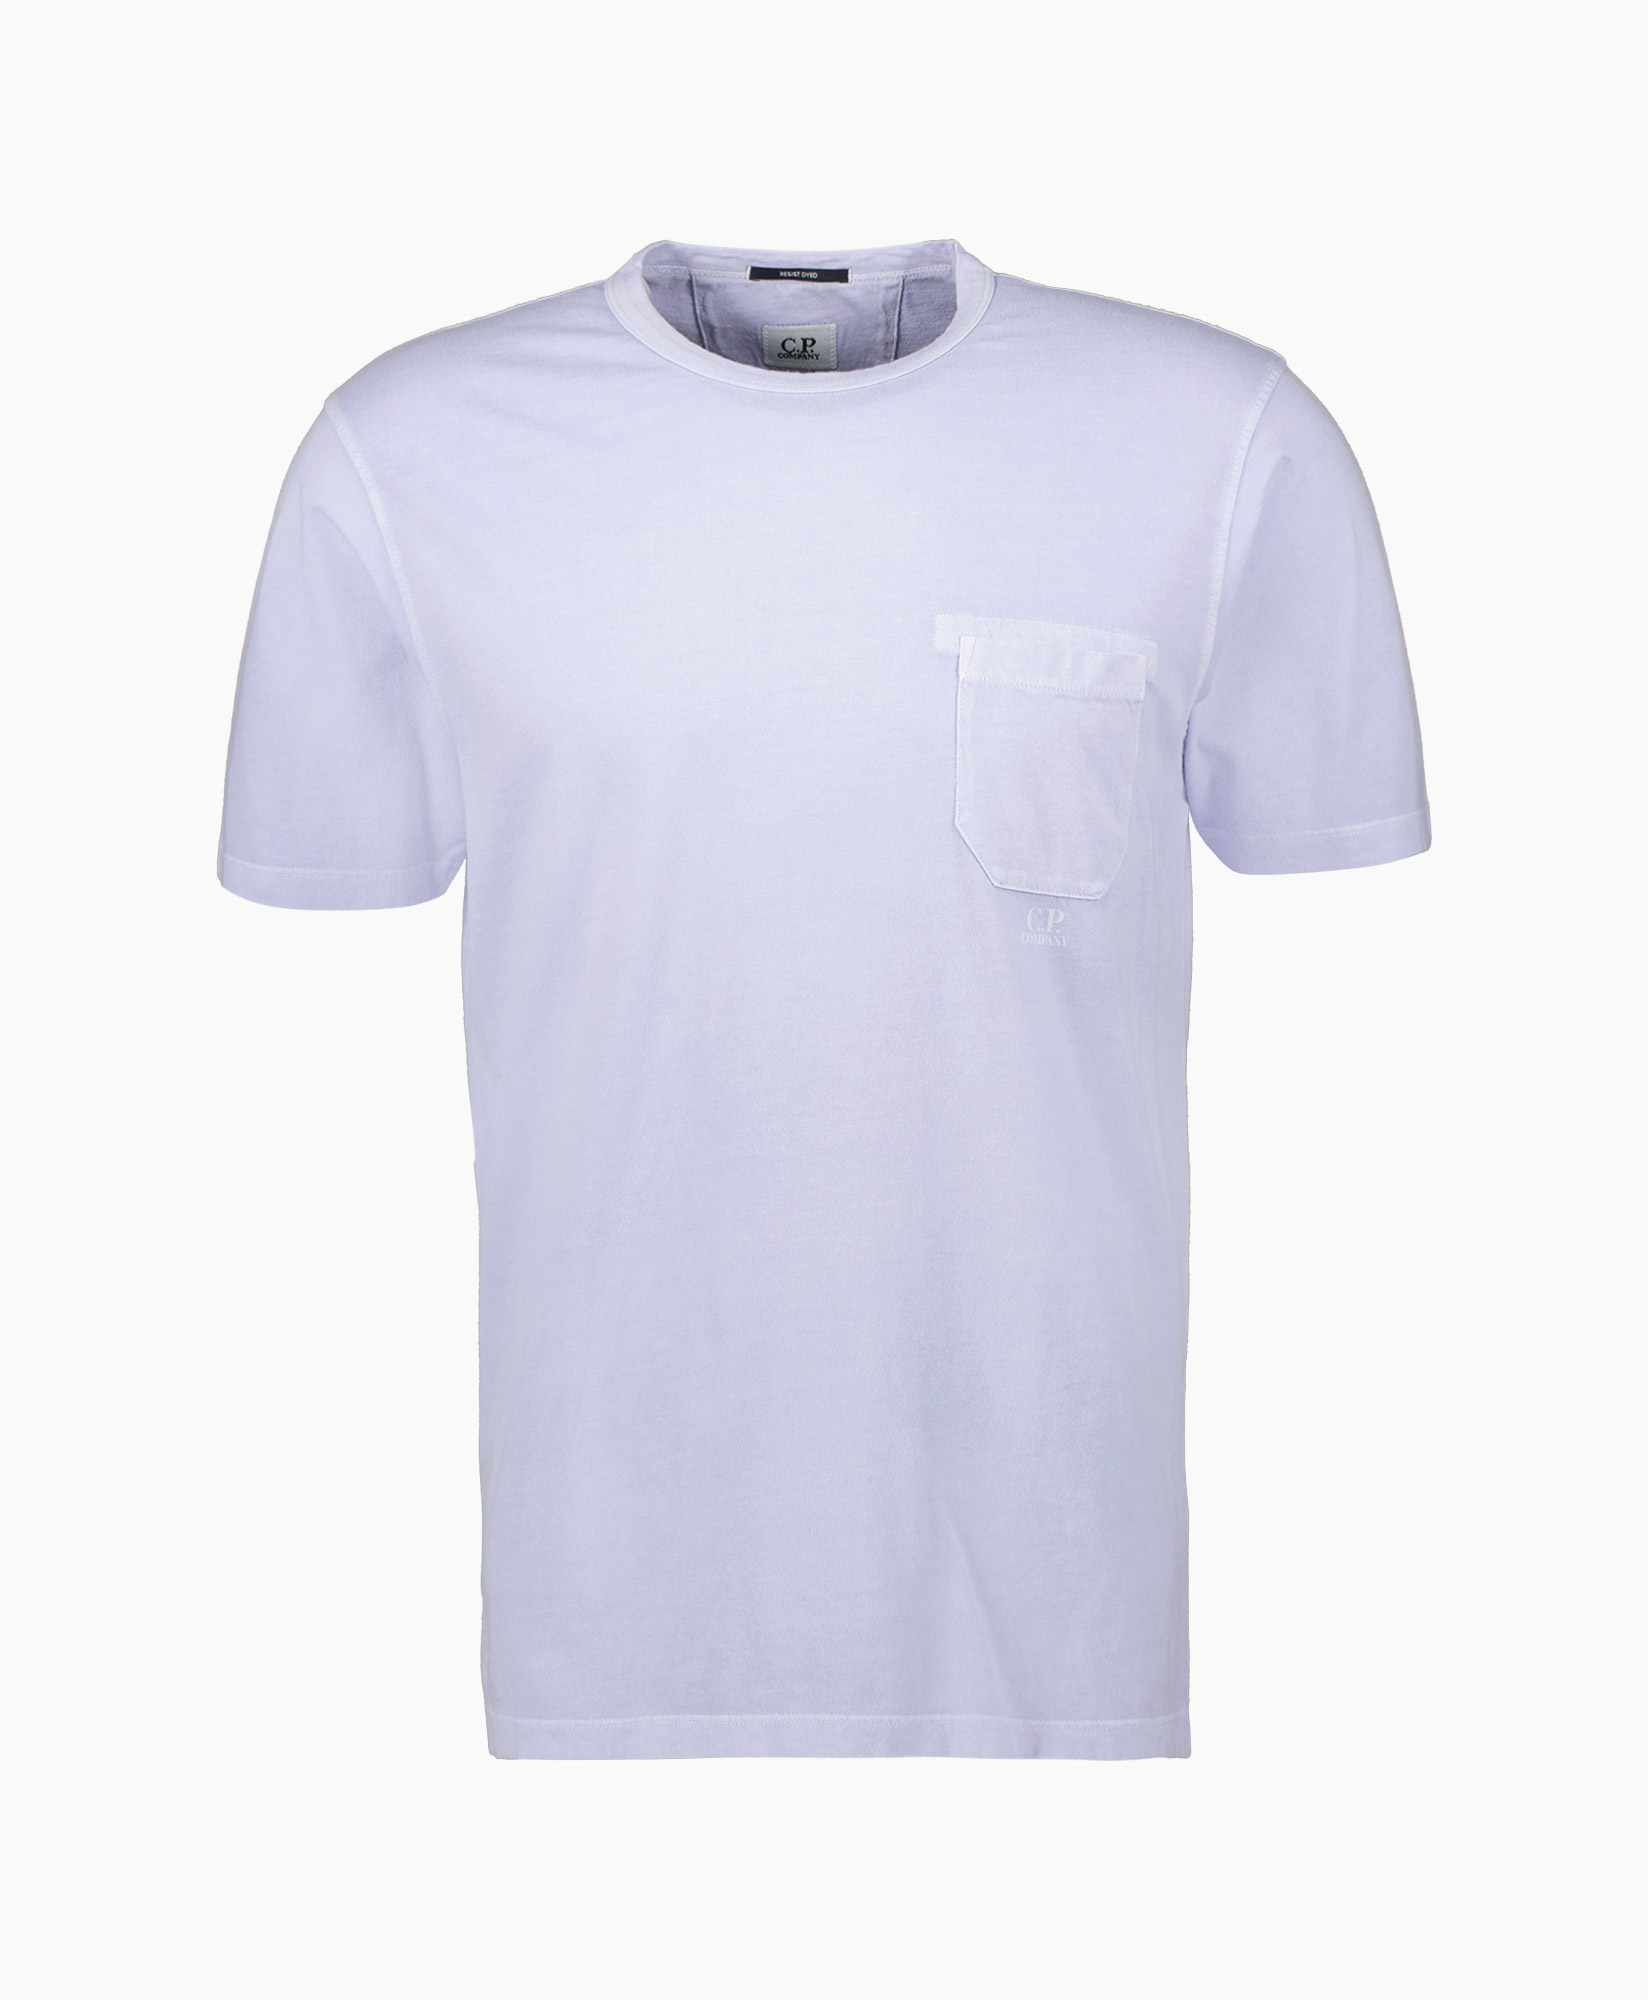 Cp Company T-shirt S182a-005431r Blauw